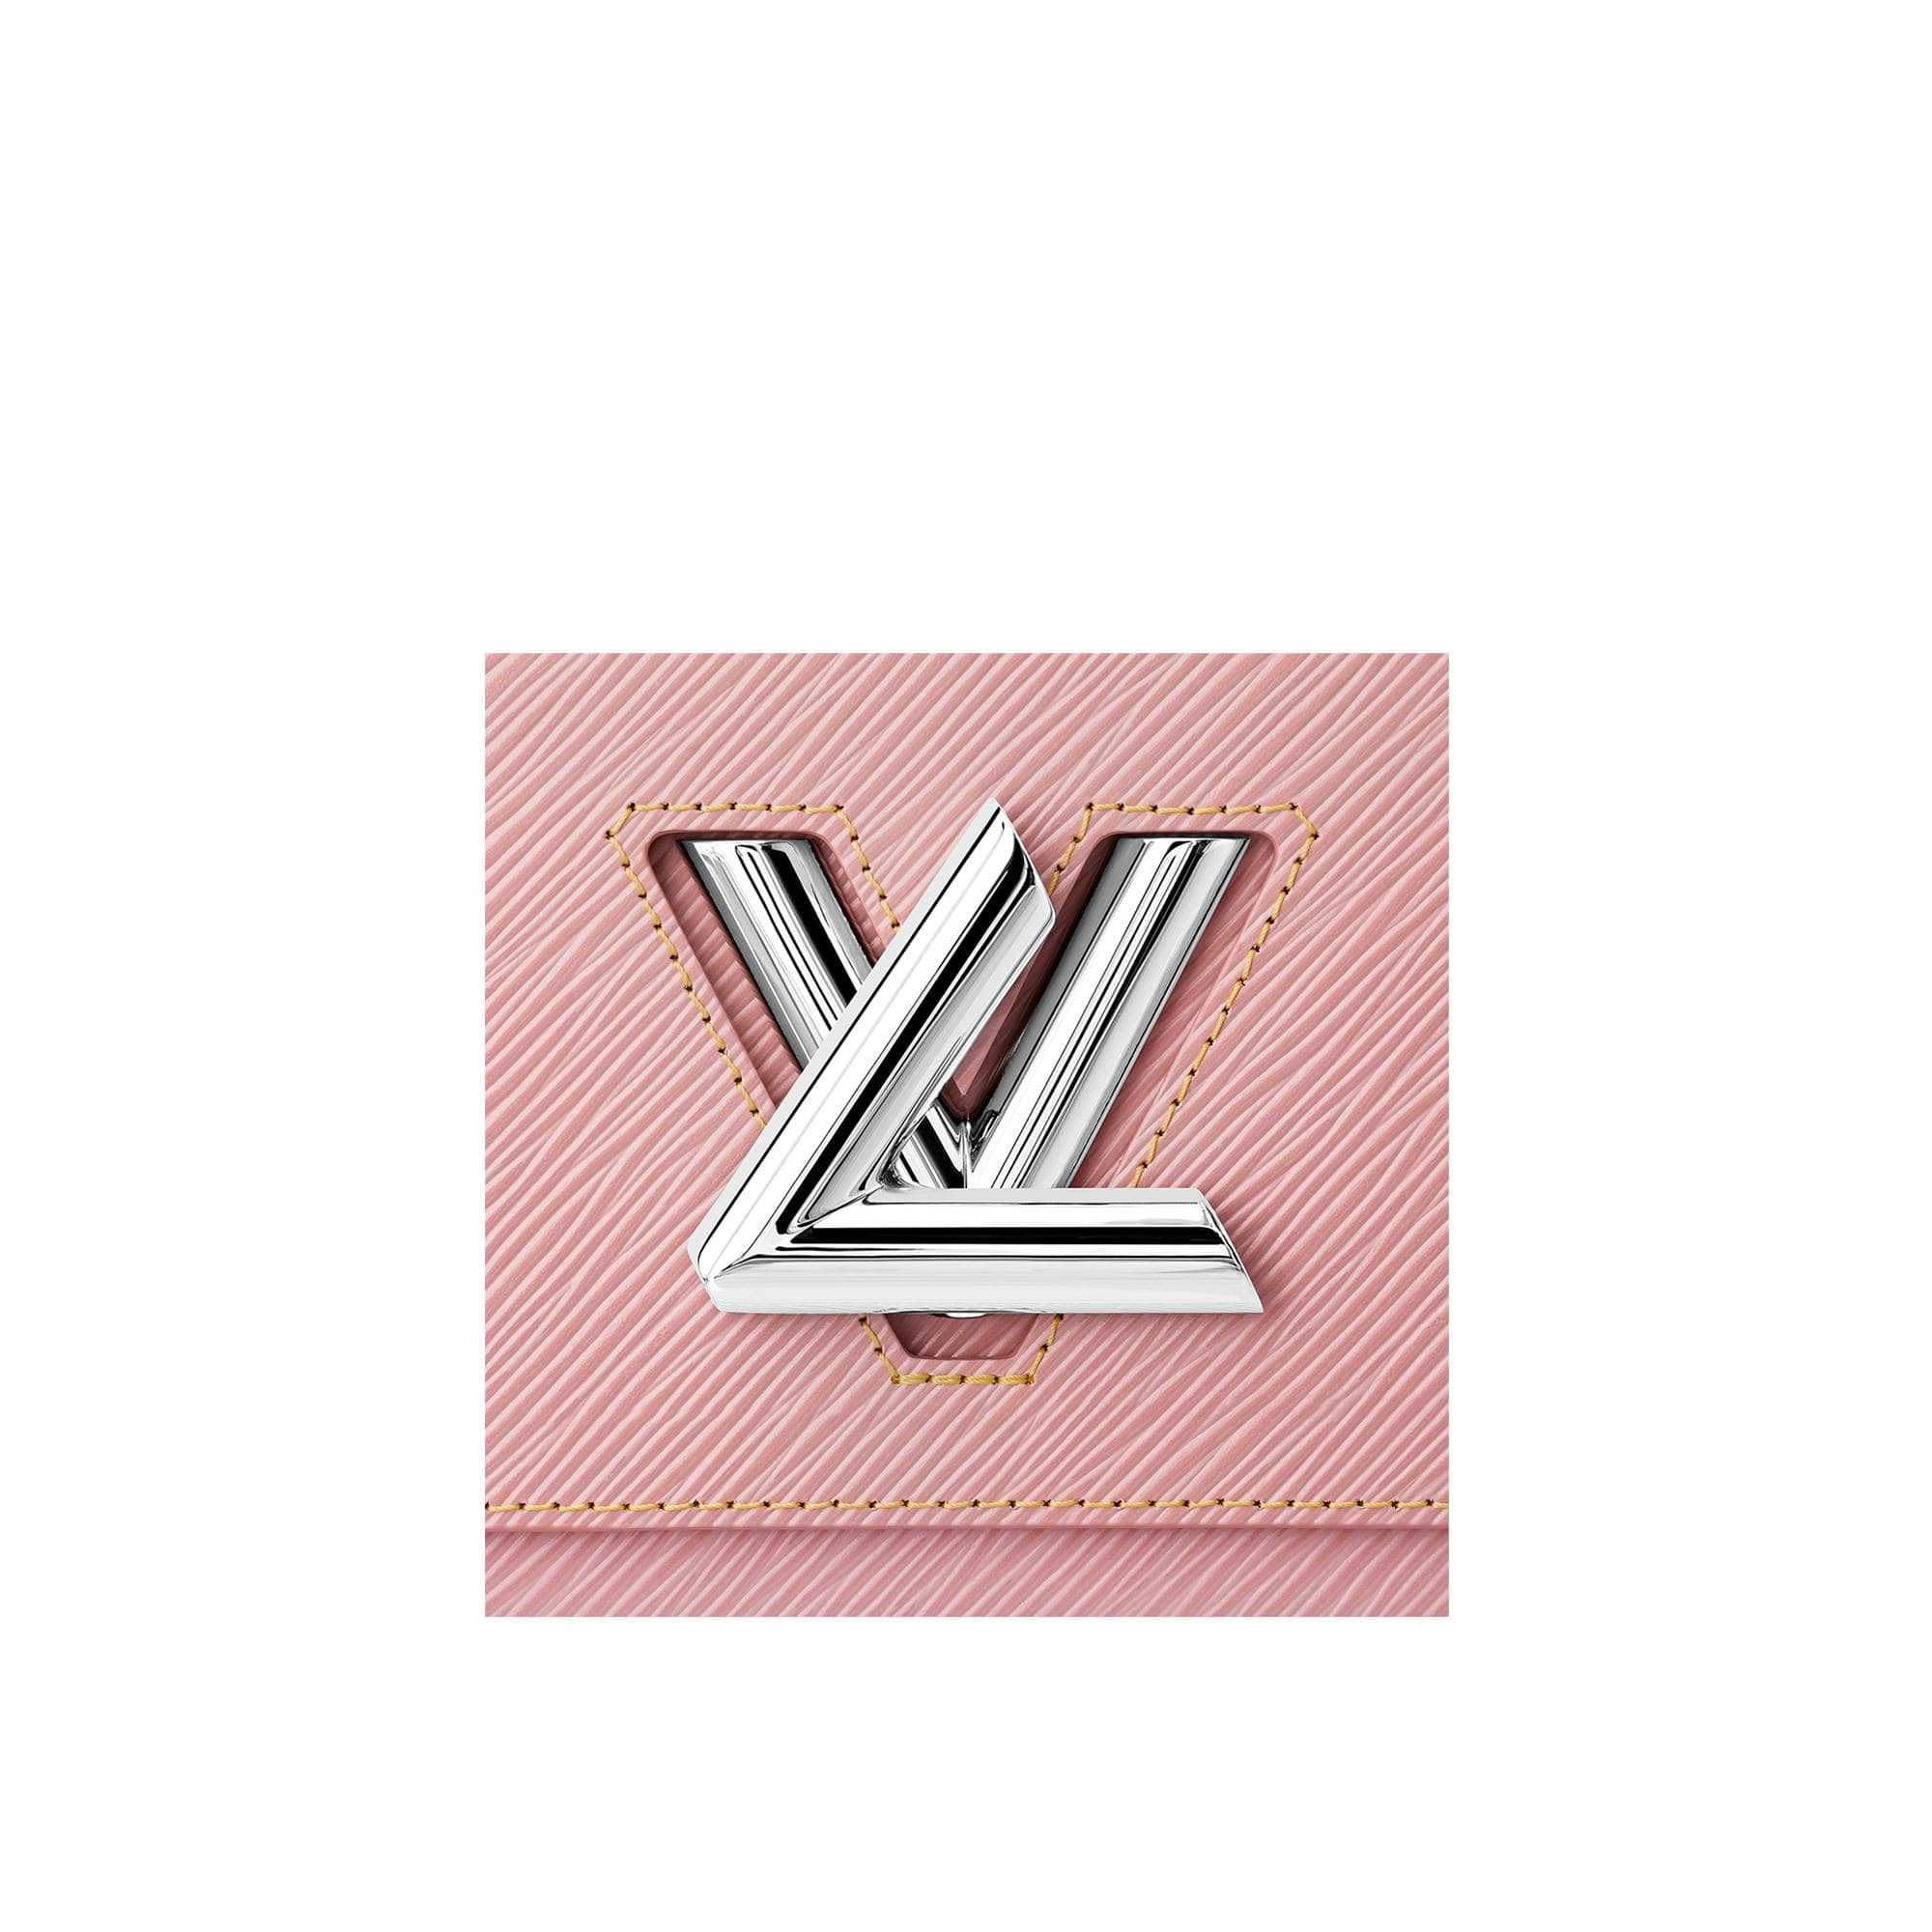 Pink Louis Vuitton Logo - LogoDix